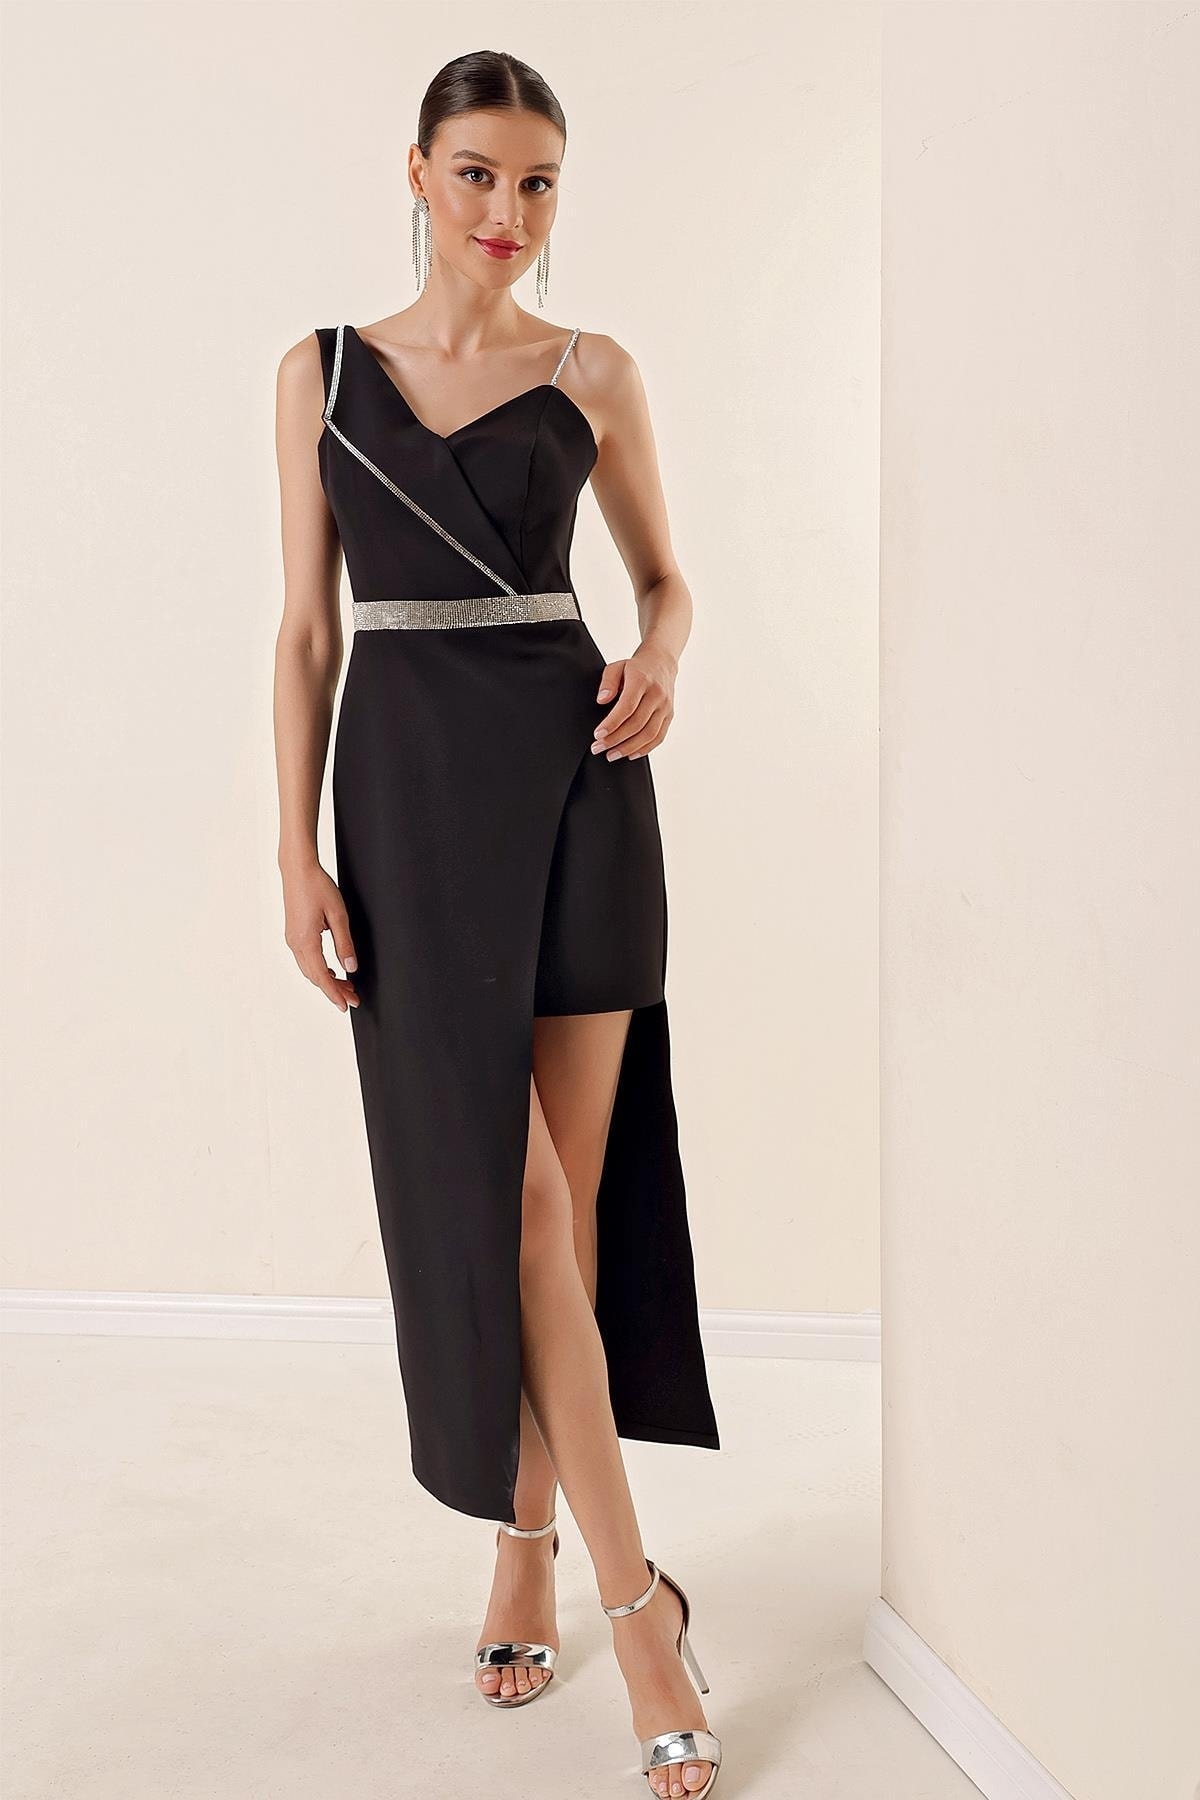 Levně By Saygı One-Shoulder Stone Detailed One Side Short Lined Long Dress Black